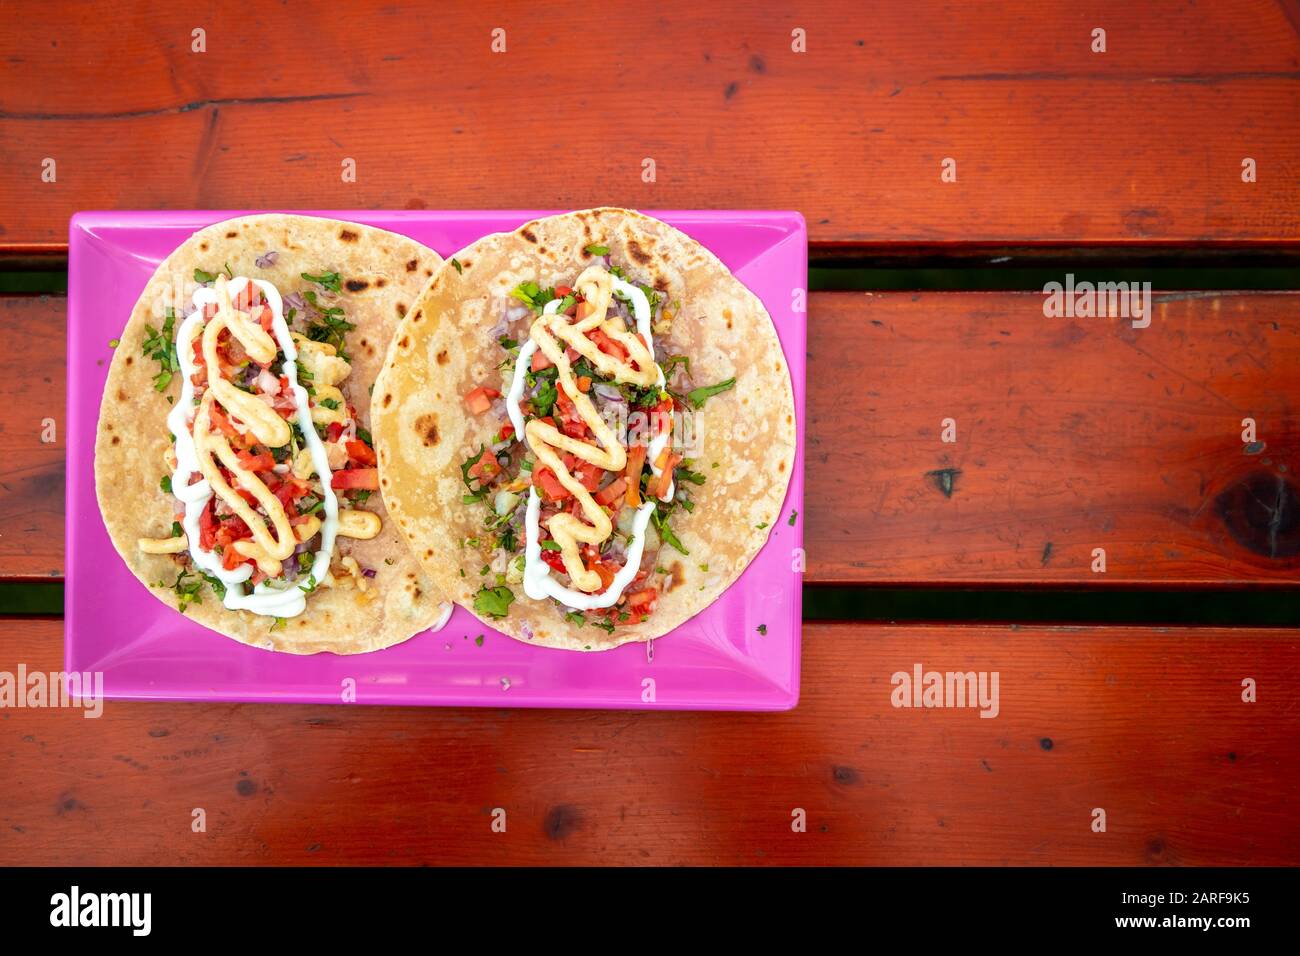 Draufsicht von Tacos. Handgemachte mexikanische Speisen werden in einem rosafarbenen Teller serviert, der auf einer Holzoberfläche platziert ist. Authentisches Würziges Essen. Stockfoto